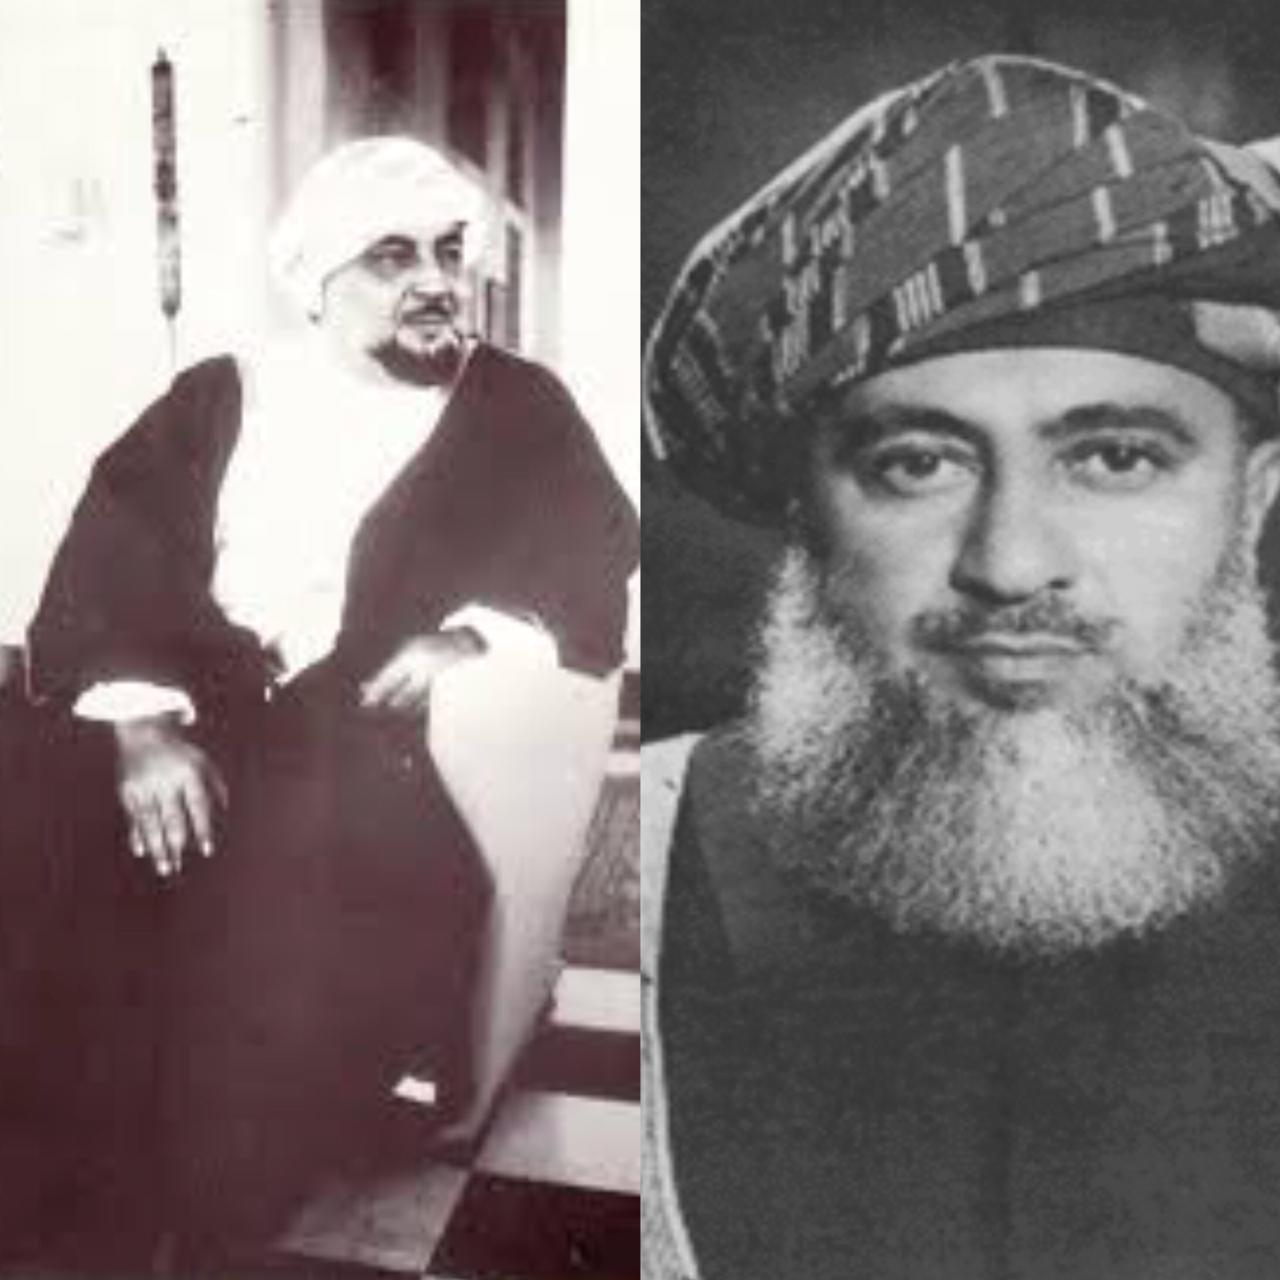 7 يوليو: قوات السلطان سعيد بن تيمور وأخيه السيد طارق حاصرت "بلاد سيت"واحداث اخرى ..